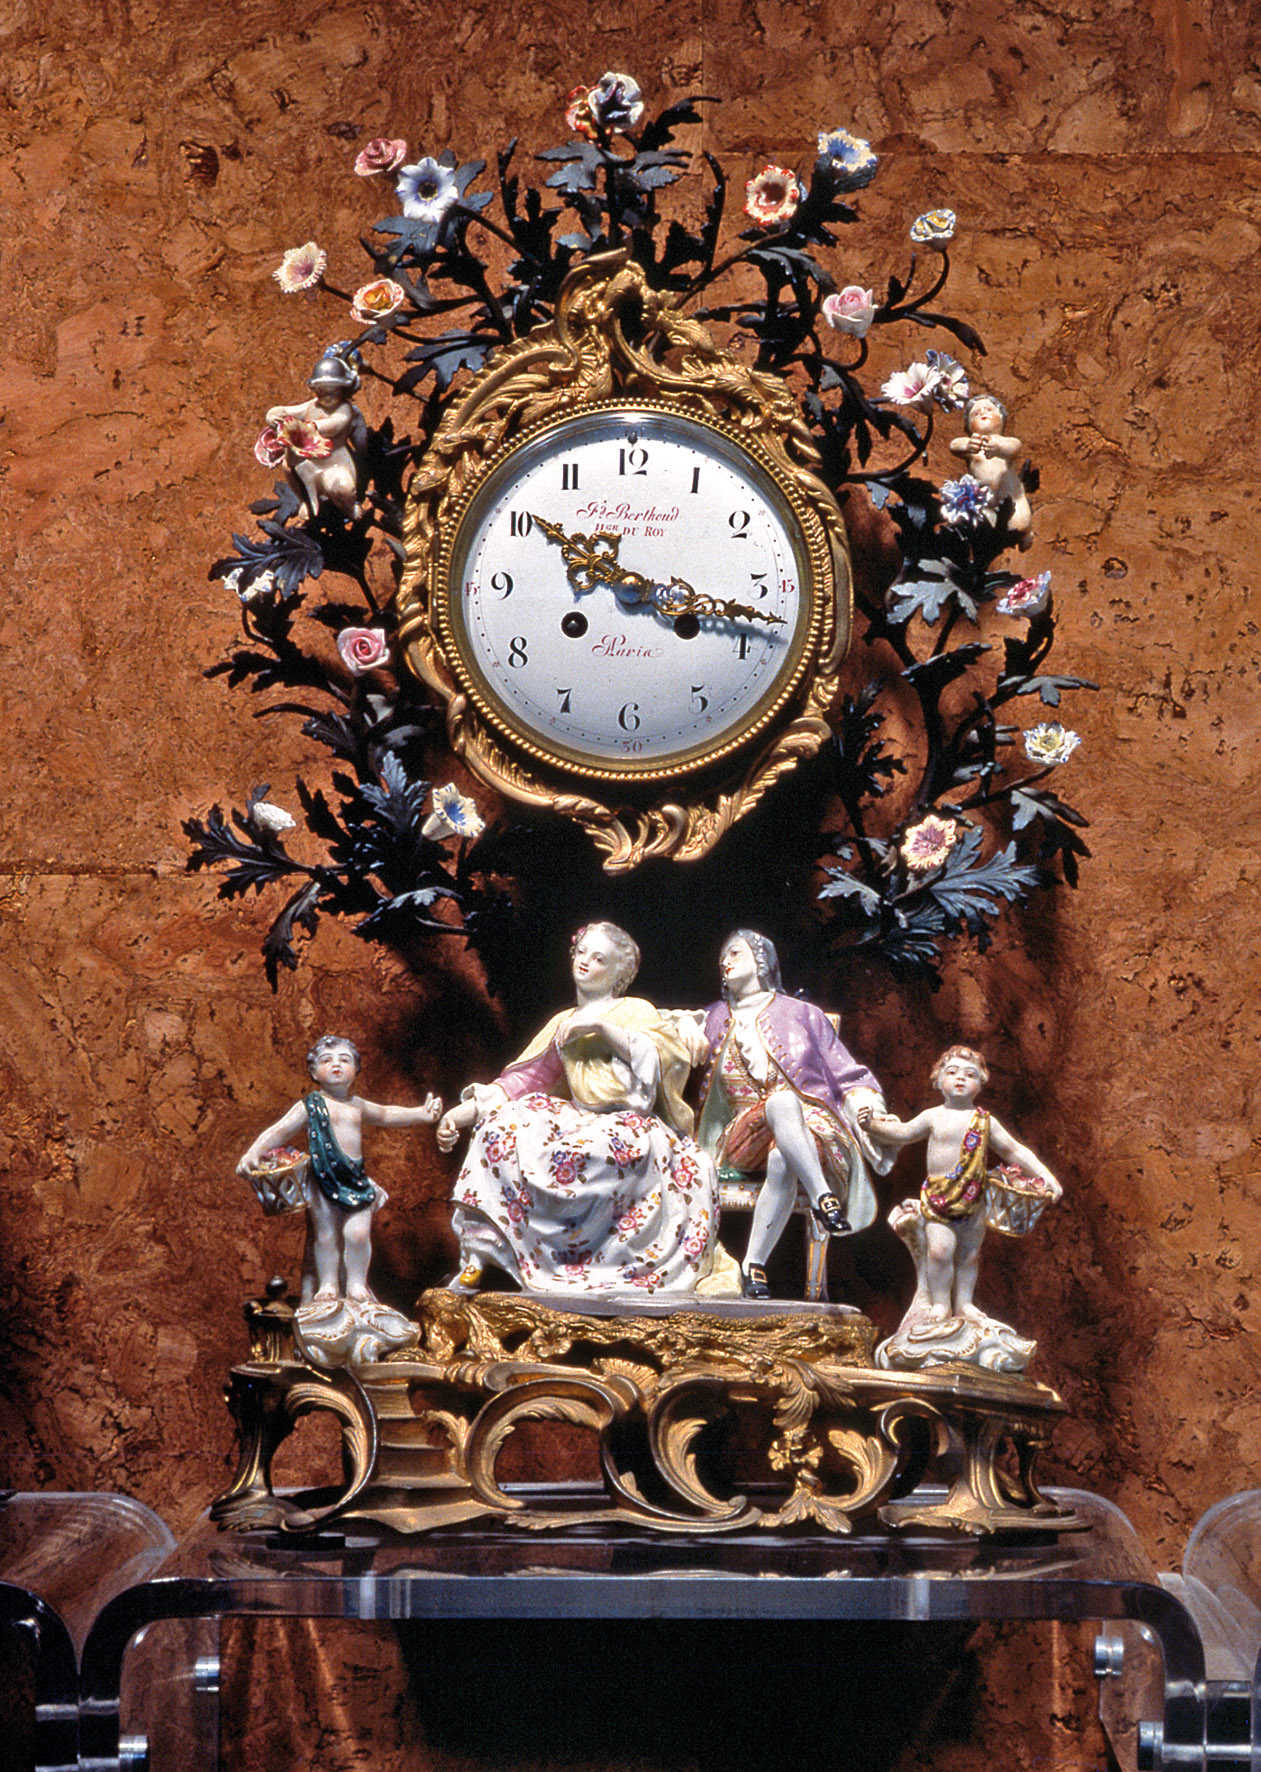 Museo del Reloj